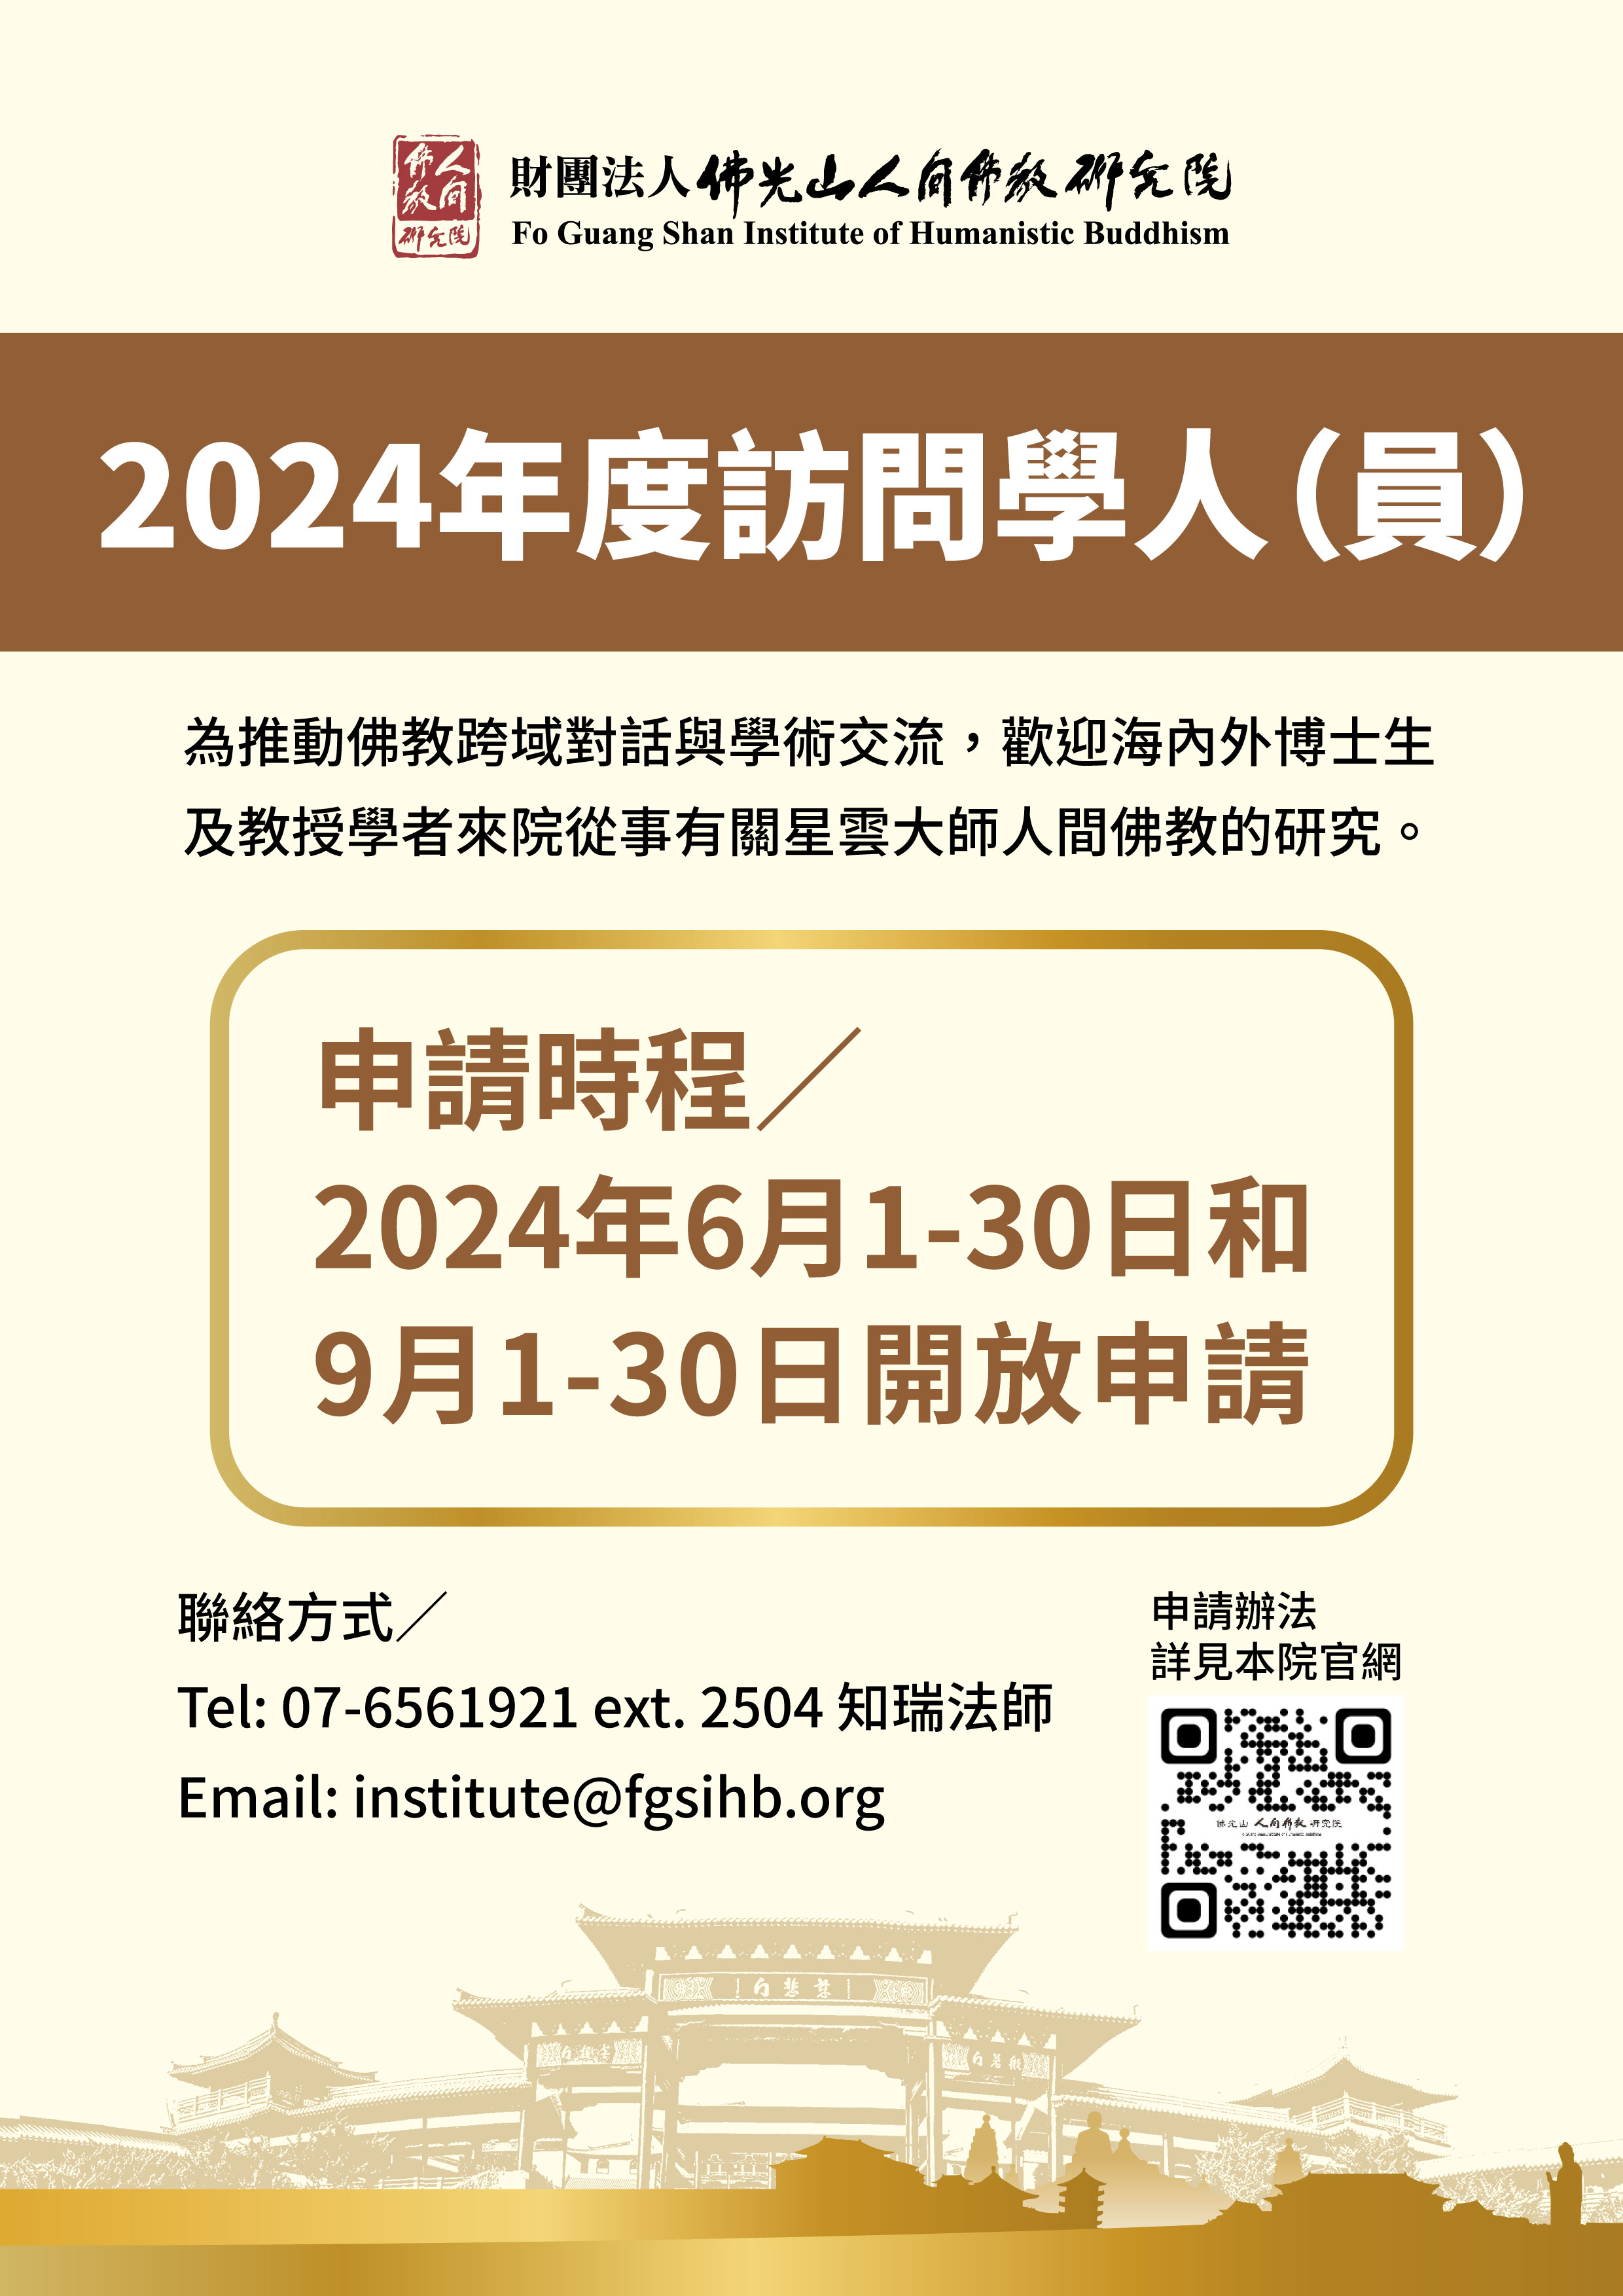 2024佛光山人間佛教研究院訪問學人申請辦法